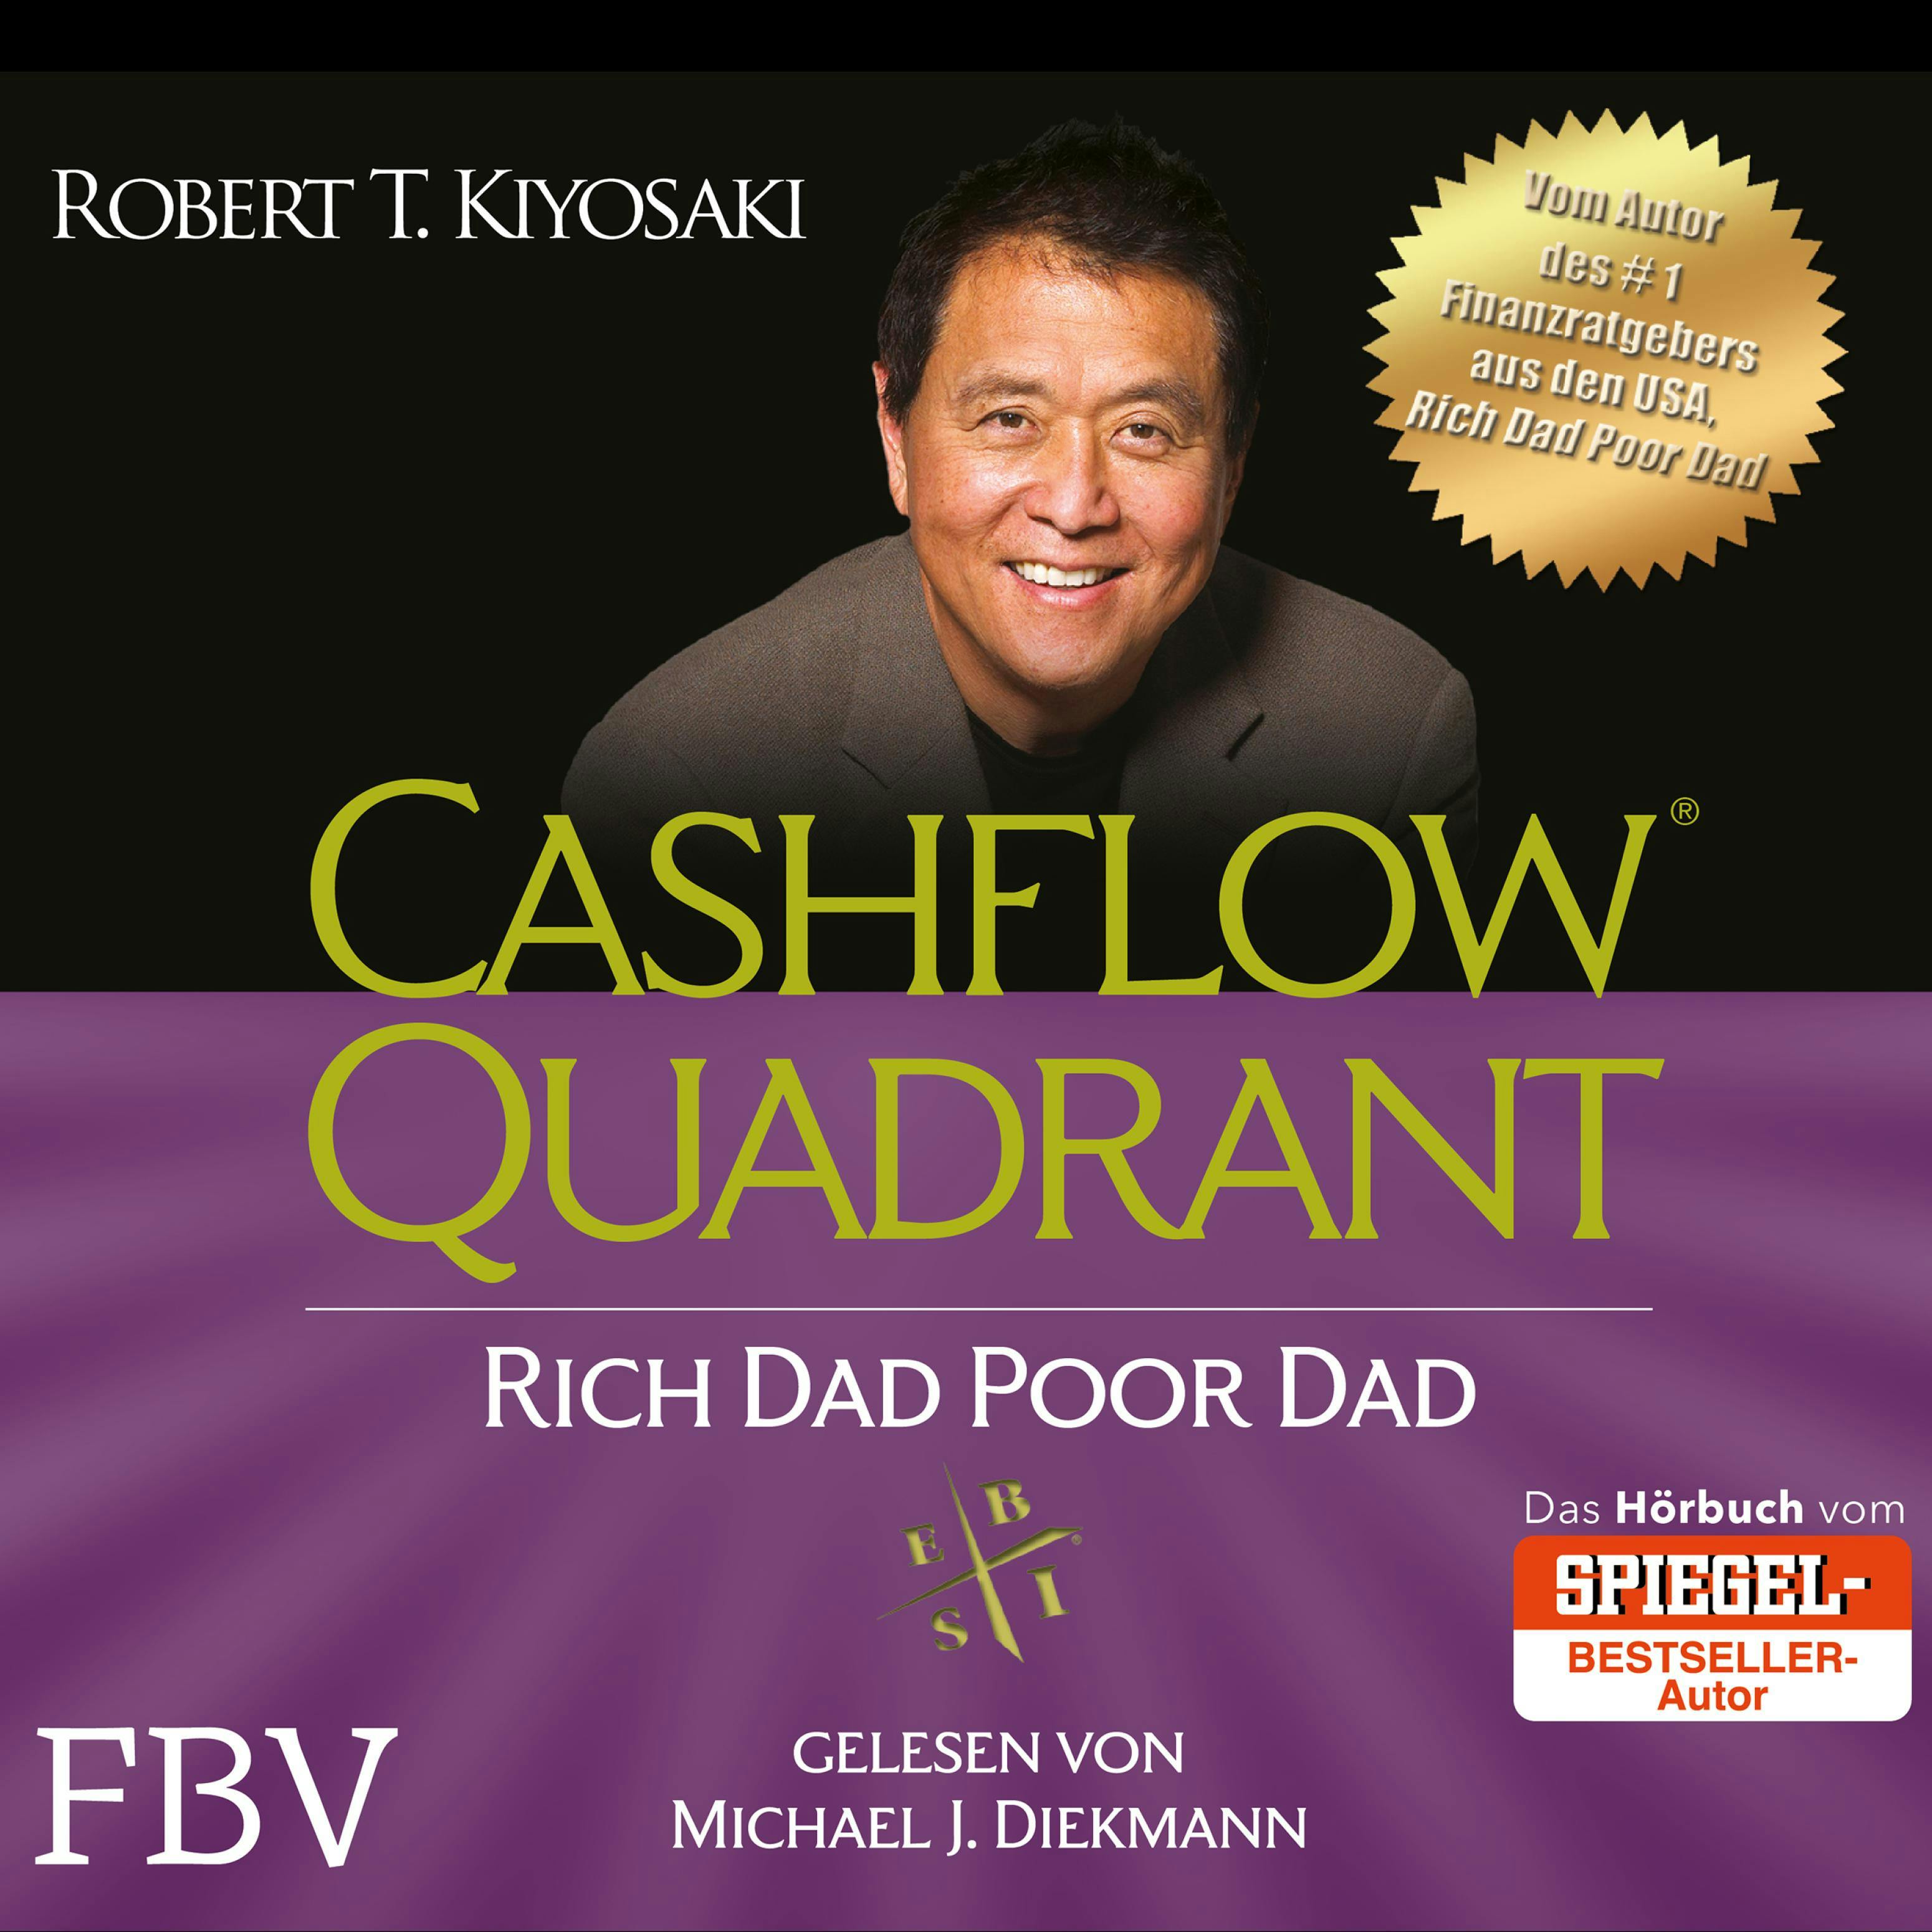 Cashflow Quadrant: Rich Dad Poor Dad: Deutsche Ausgabe - Robert T. Kiyosaki